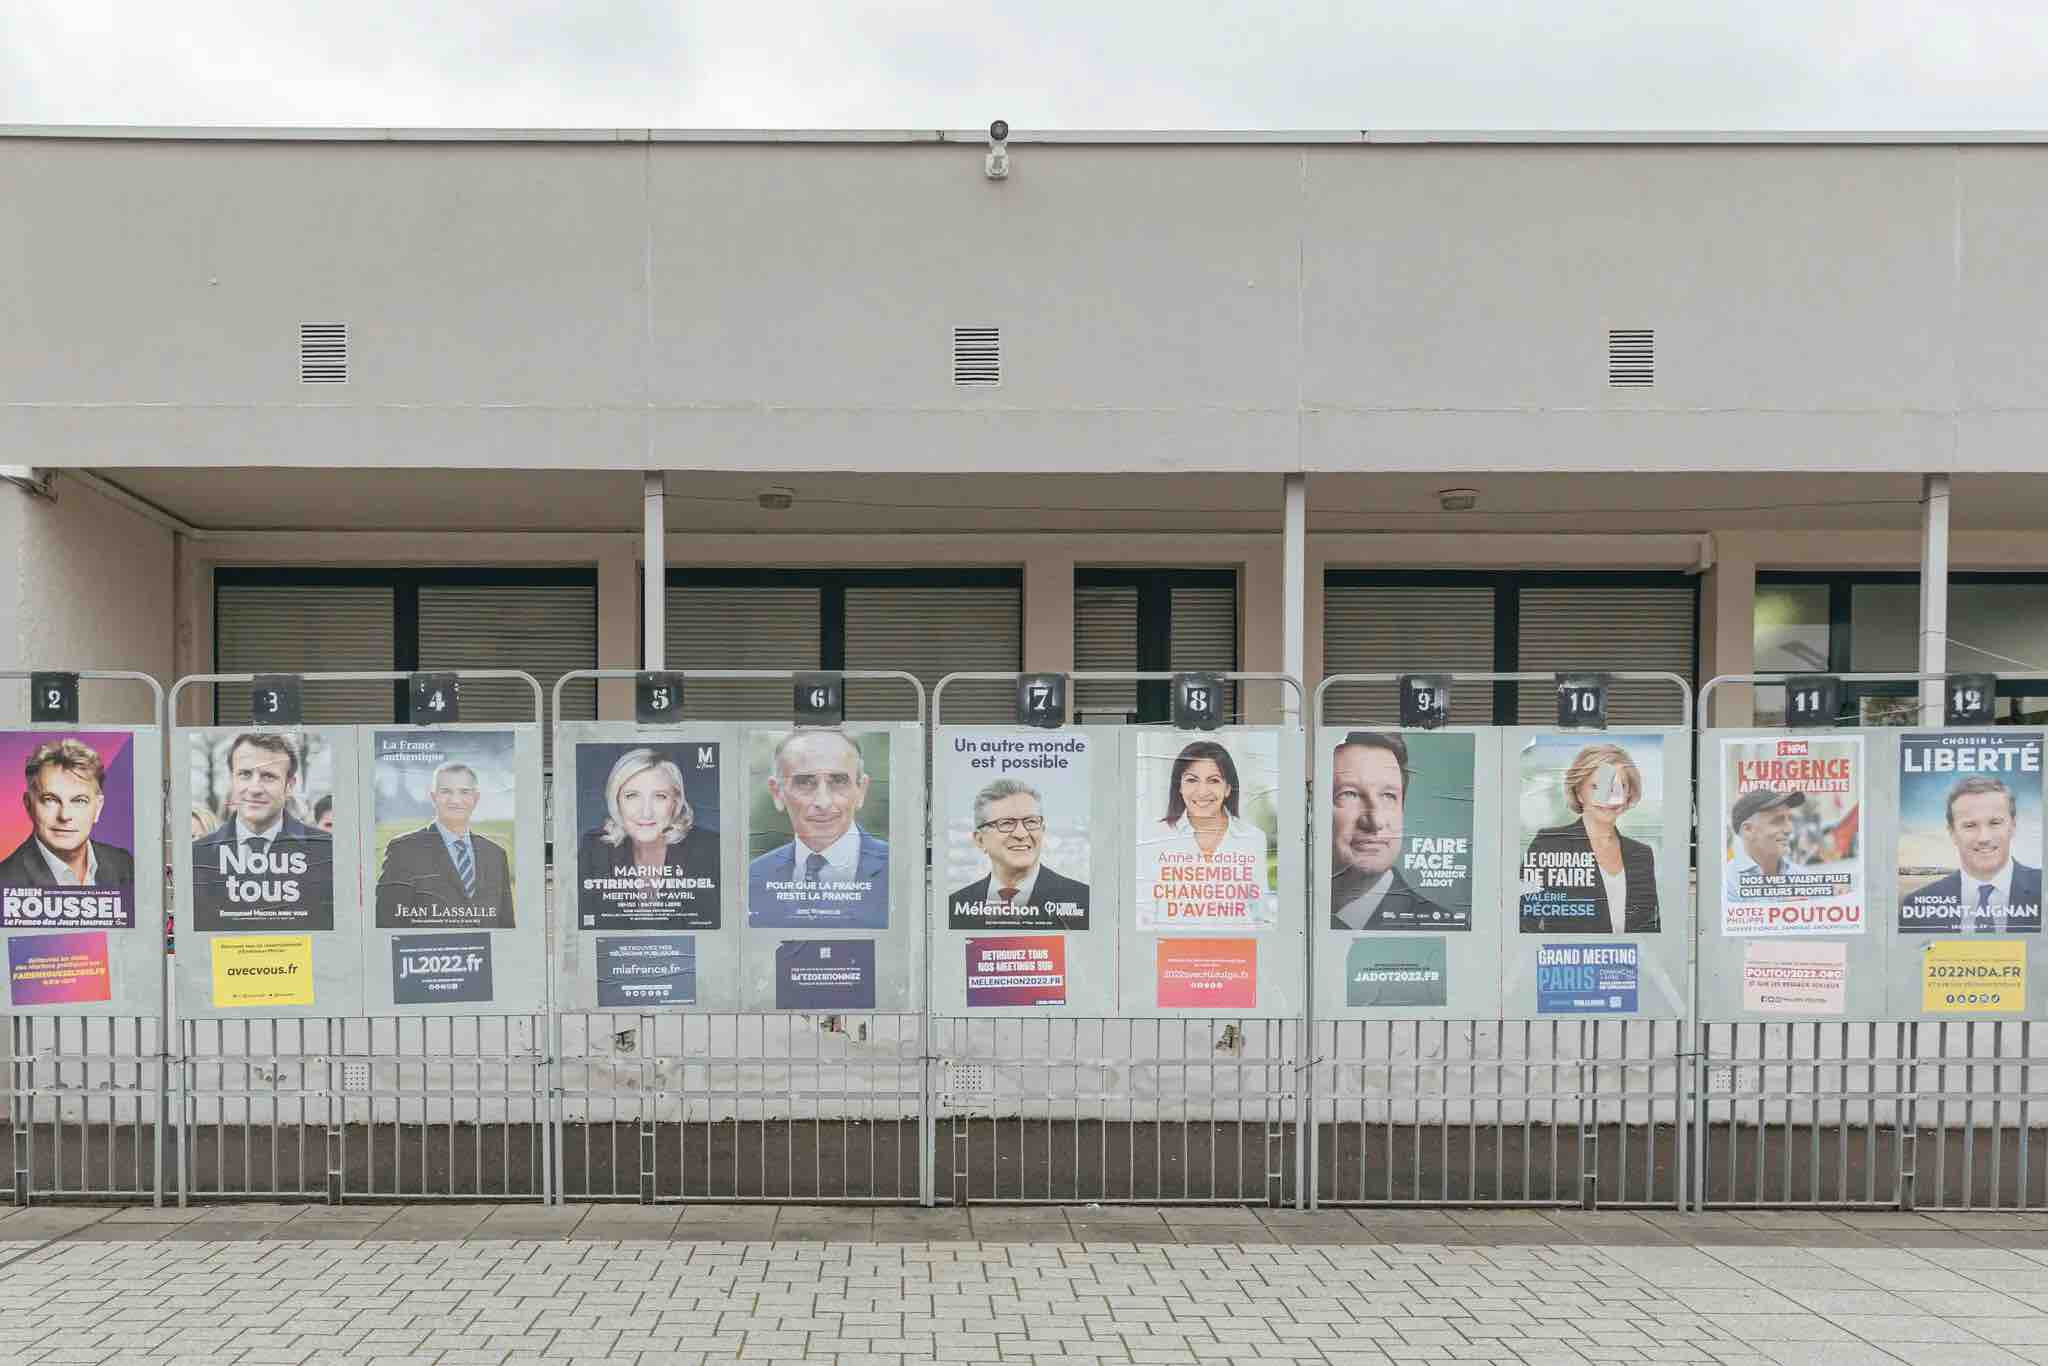 Γαλλικές εκλογές:  ο Μακρόν και η Λε Πεν, ο Πικετί και ο Πρετεντέρης